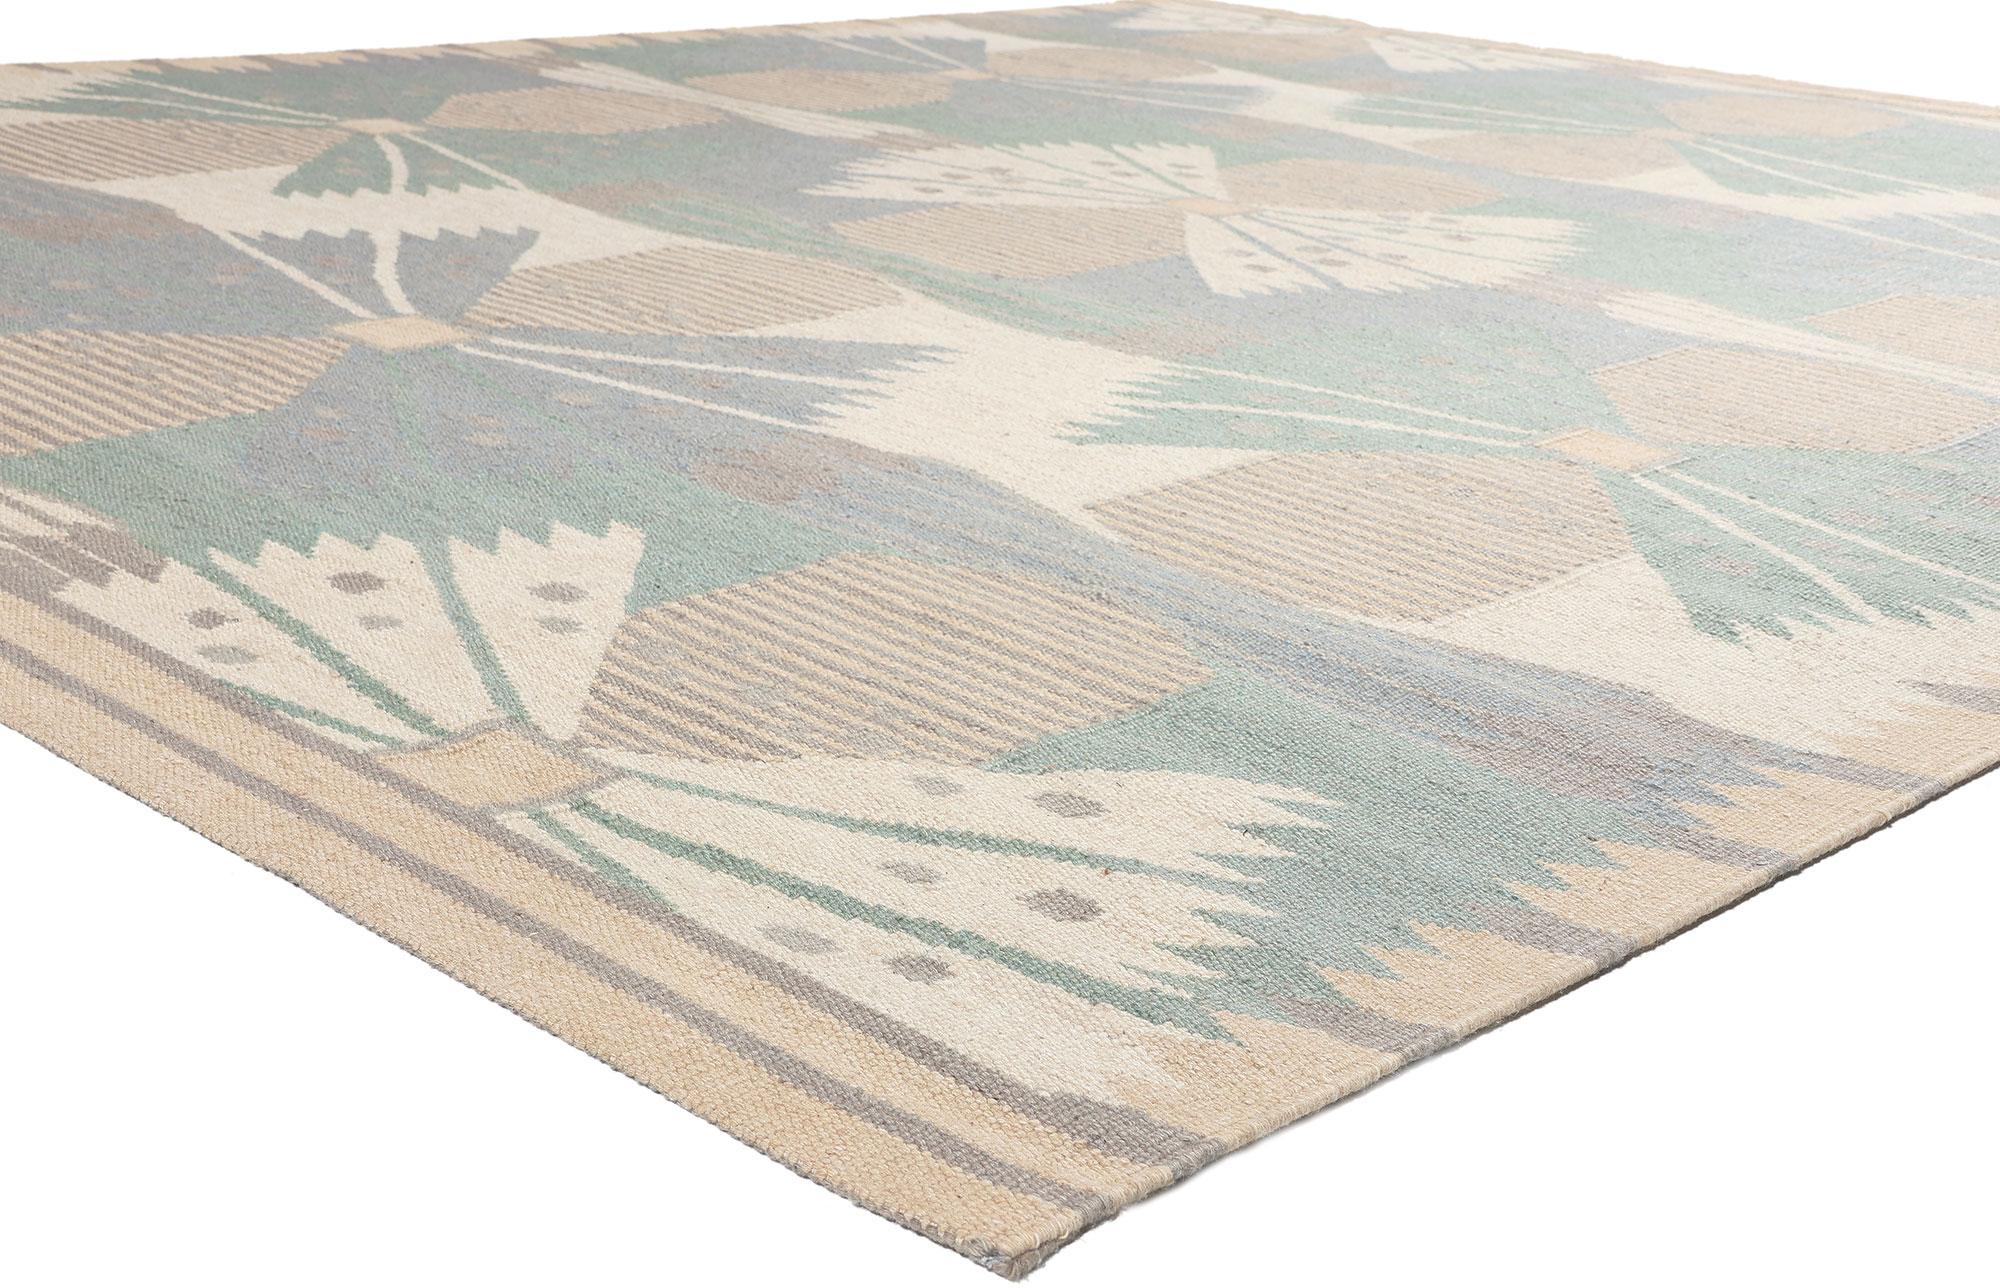 30978 Skandinavisch moderner, schwedisch inspirierter Kilim-Teppich, 09'05 x 11'07.
Mit seiner Schlichtheit, dem geometrischen Design und den sanften Farben vermittelt dieser handgewebte, schwedisch inspirierte Kilim-Teppich aus Wolle ein Gefühl der